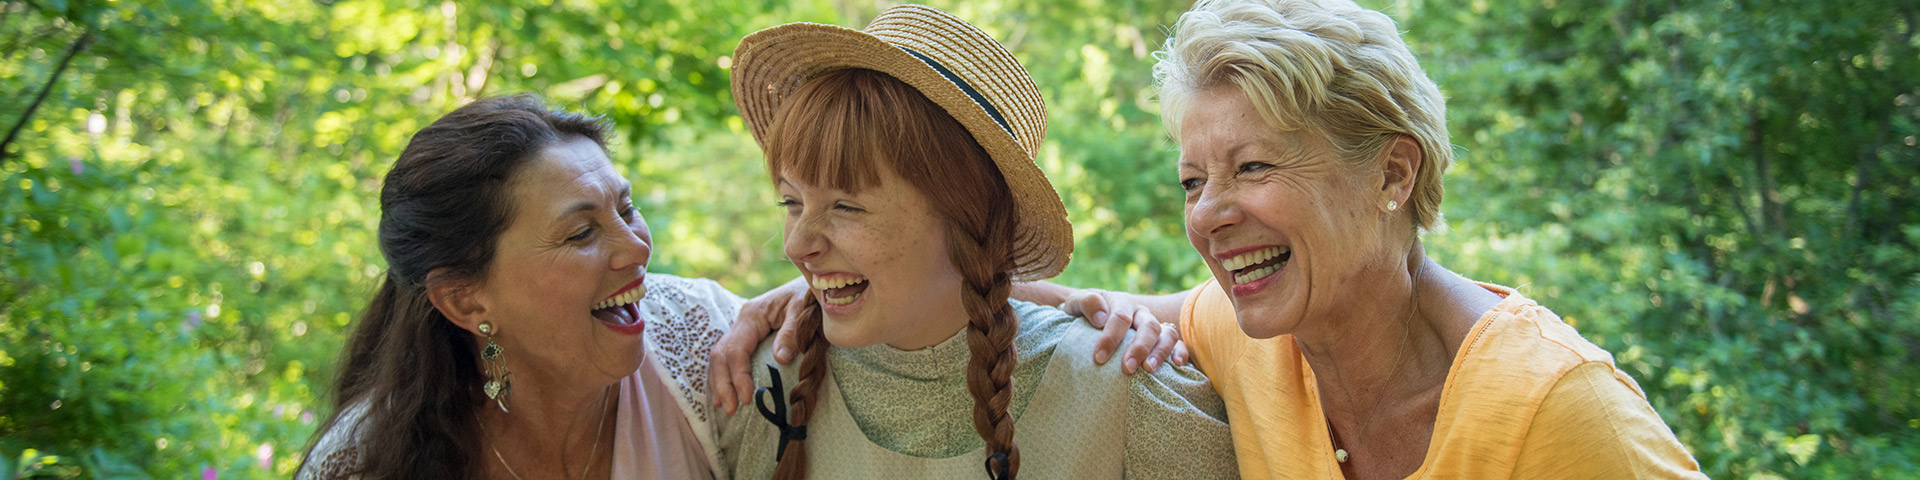 Anne Shirley, personnage costumé, prend du bon temps avec deux visiteurs adultes dans le sentier Balsam Hollow du site patrimonial Green Gables lors d'une journée d'été.